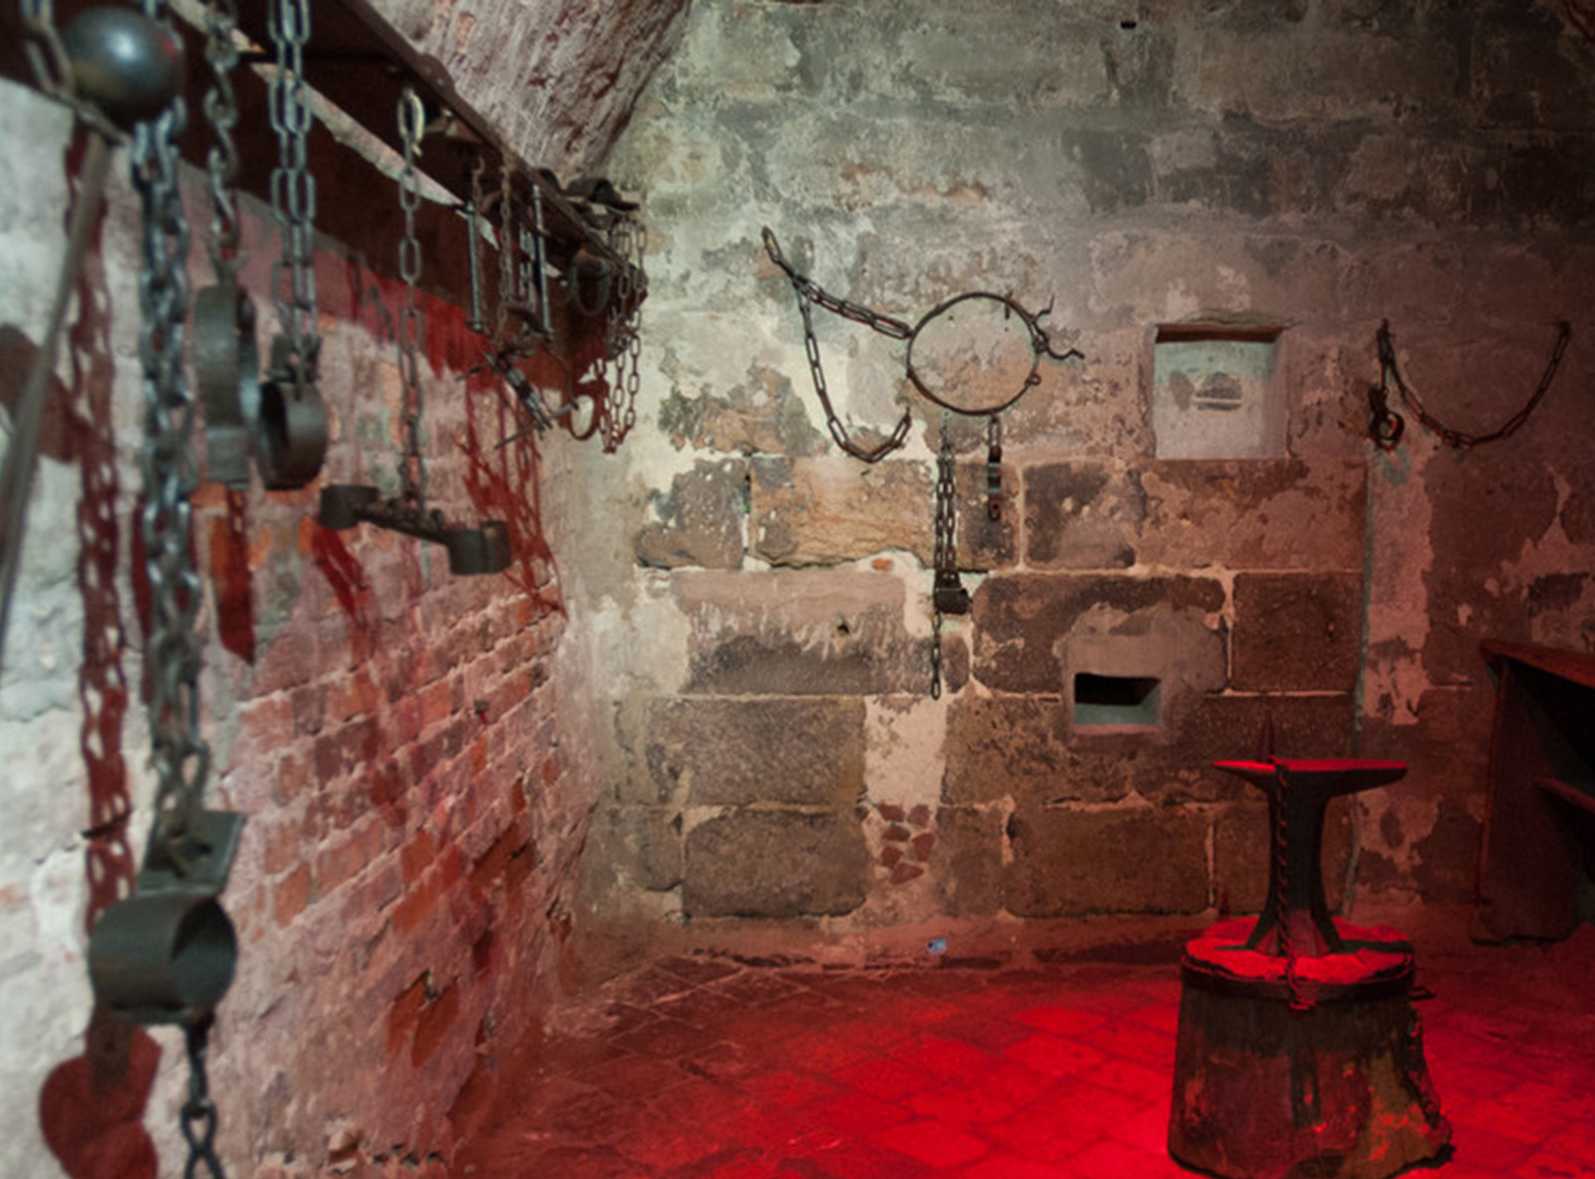 Die Abbildung zeigt die „Folterkammer“ der Nürnberger Lochgefängnisse, mit an den Wänden hängen eiserne Fesseln. Die Fotoaufnahme stammt von den Museen der Stadt Nürnberg.